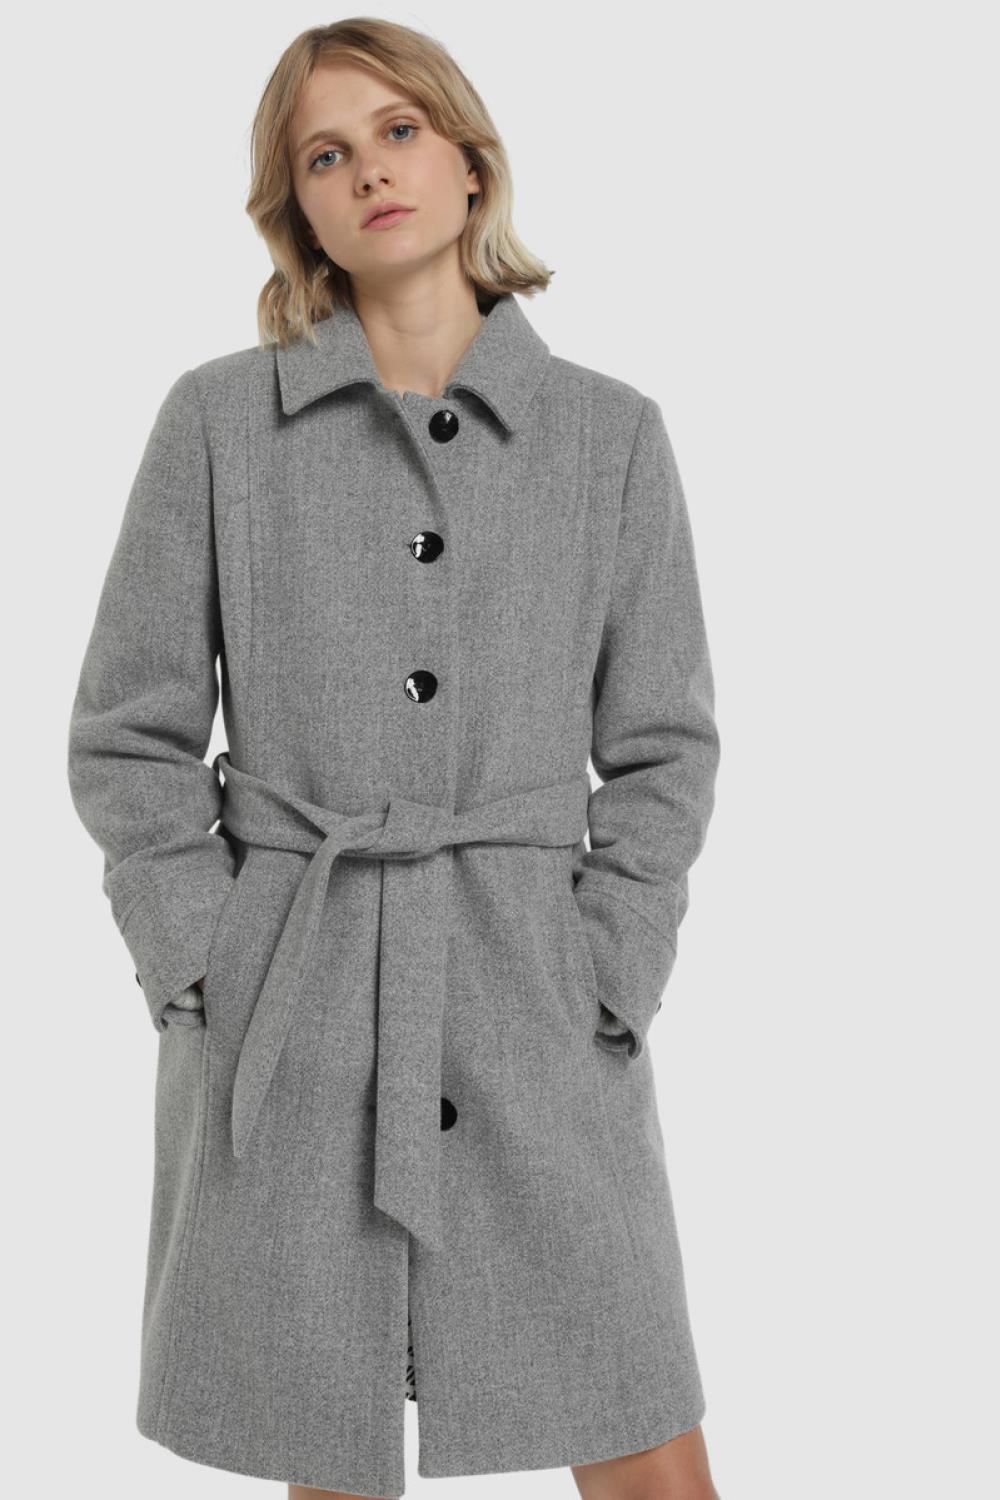 abrigos de moda otoño invierno 2019 2020 fórmula joven 79,99€